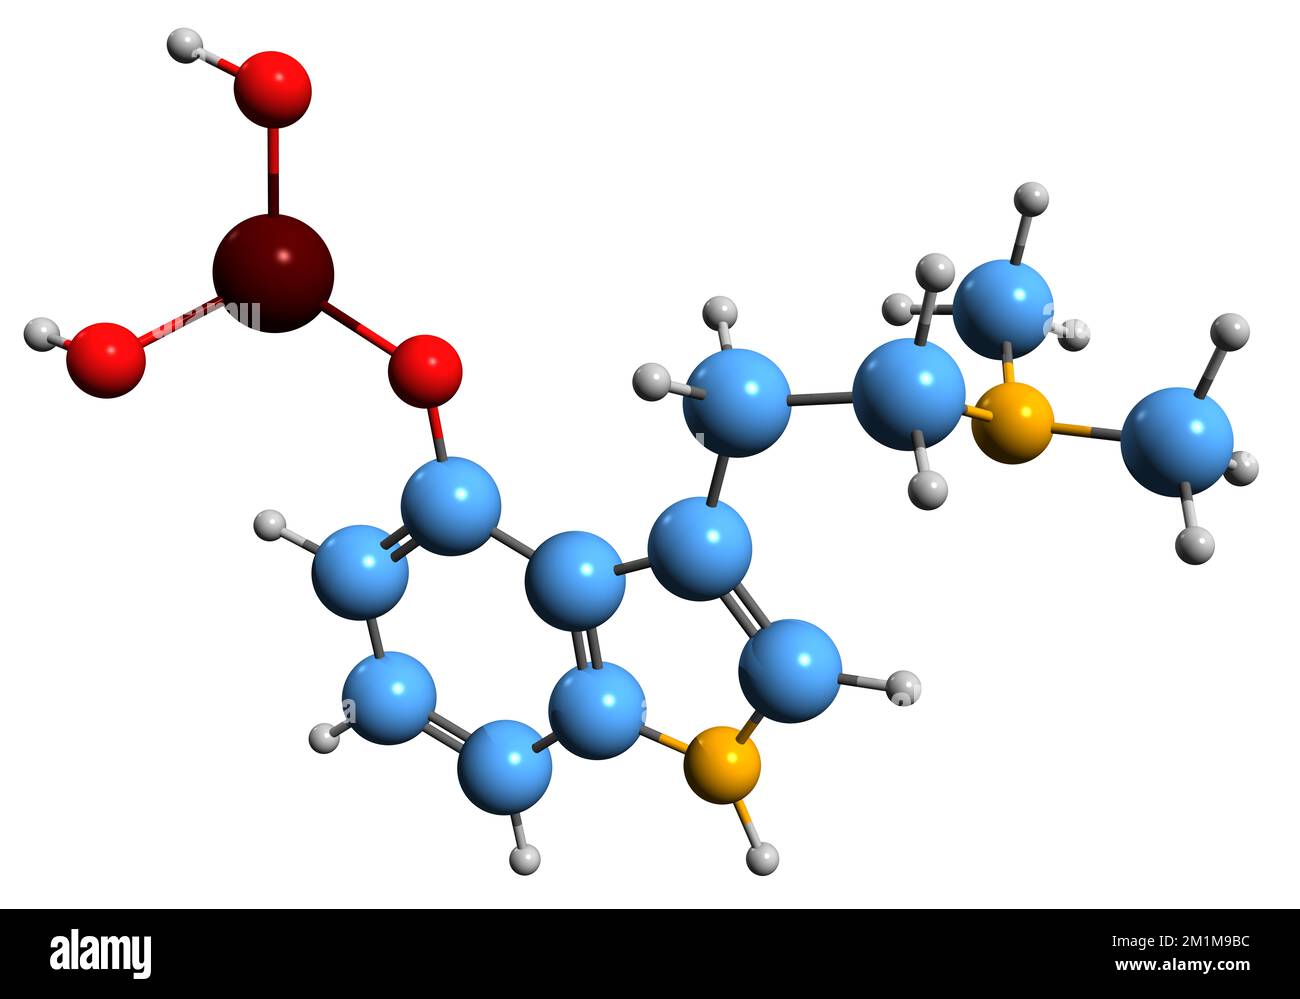 3D immagine della formula scheletrica della psilocibina - struttura chimica molecolare del profarmaco psichedelico Psilocibe isolato su sfondo bianco Foto Stock